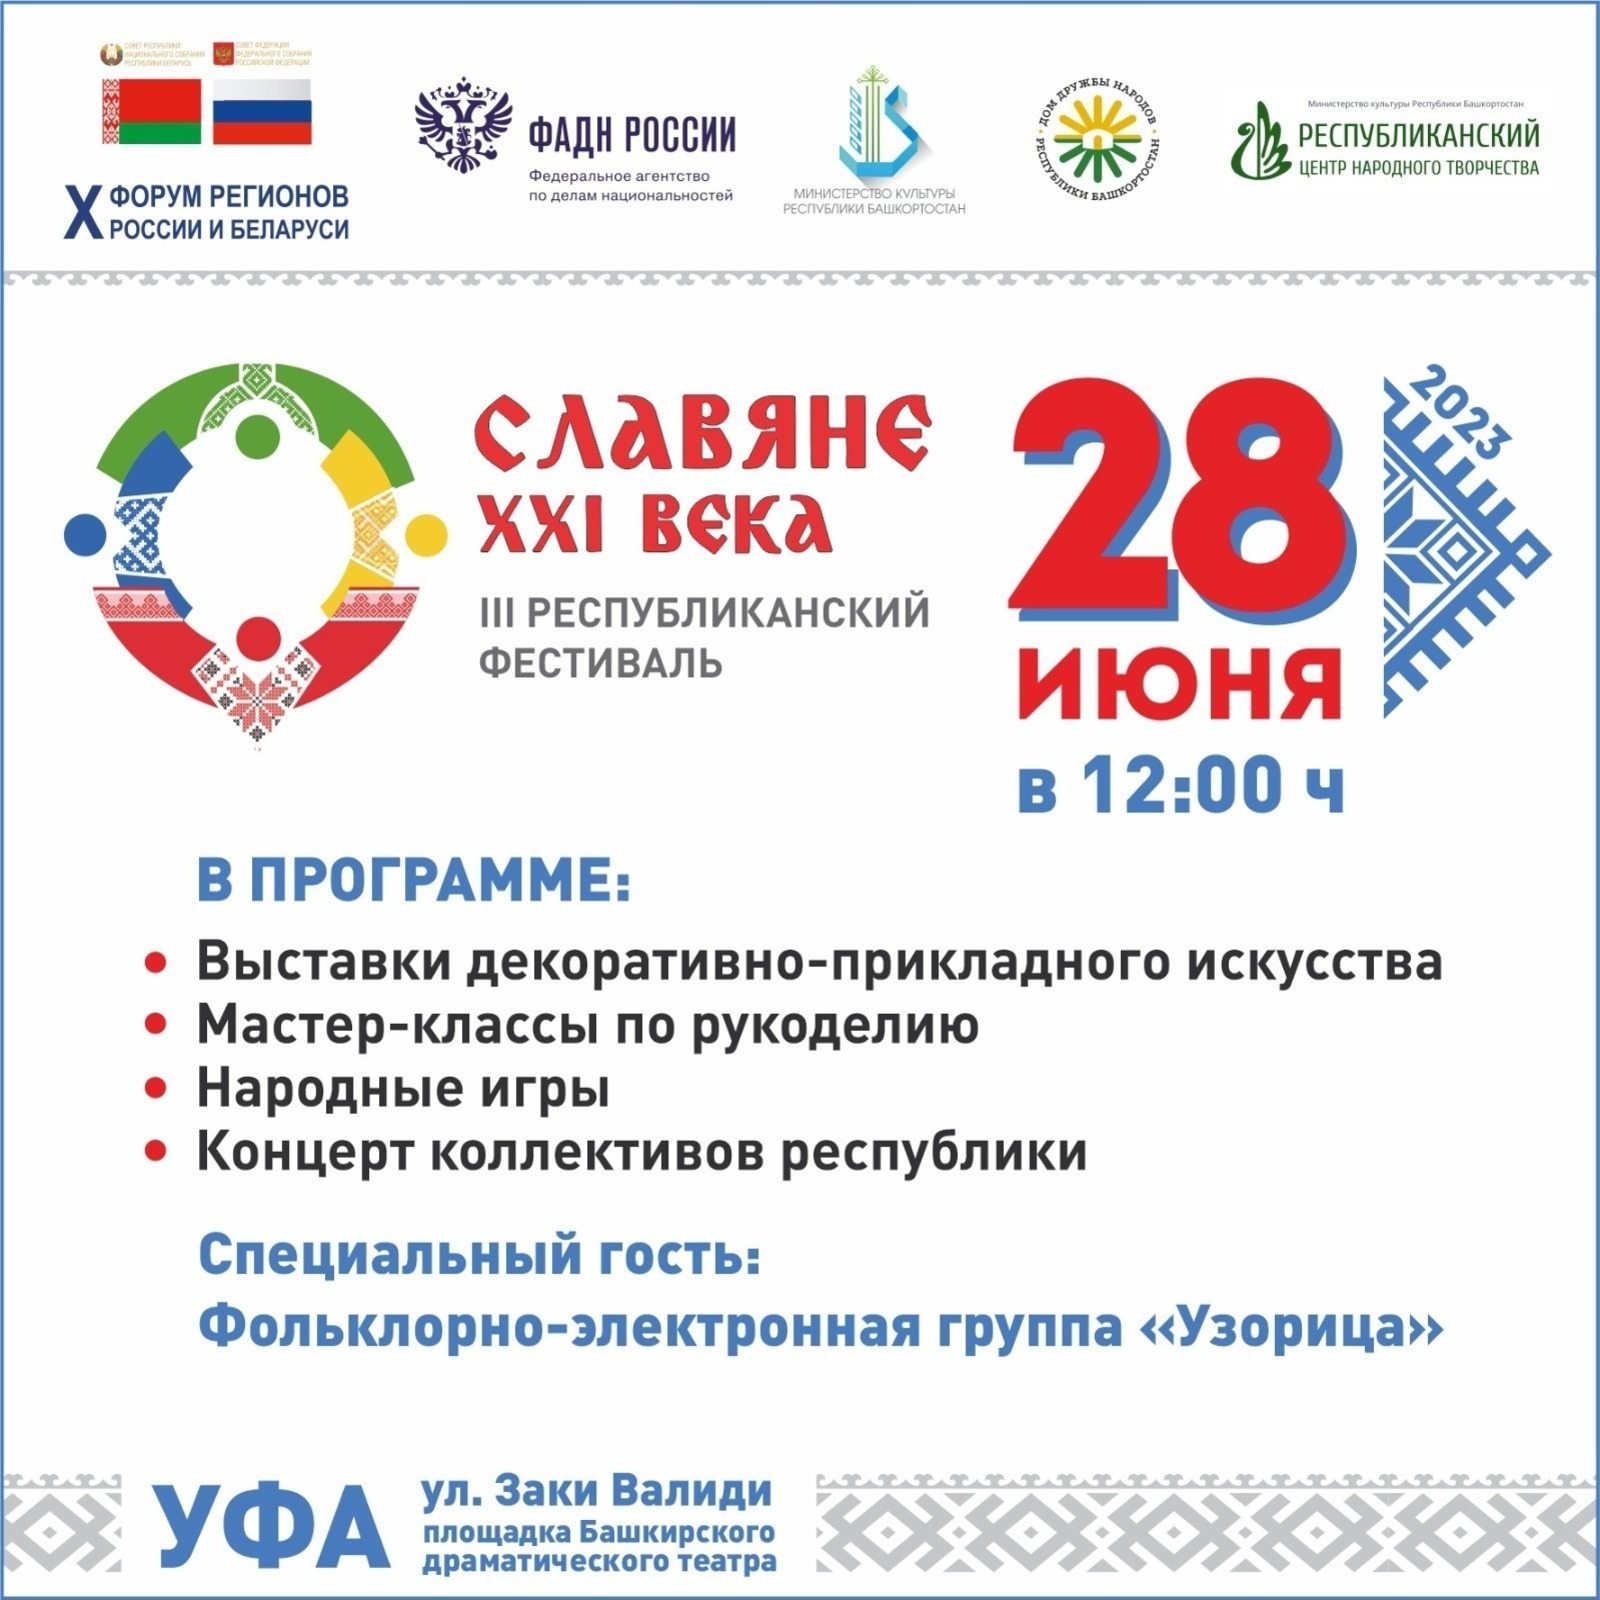 28 июня в рамках форума регионов России и Беларуси состоится республиканский фестиваль «Славяне XXI века»